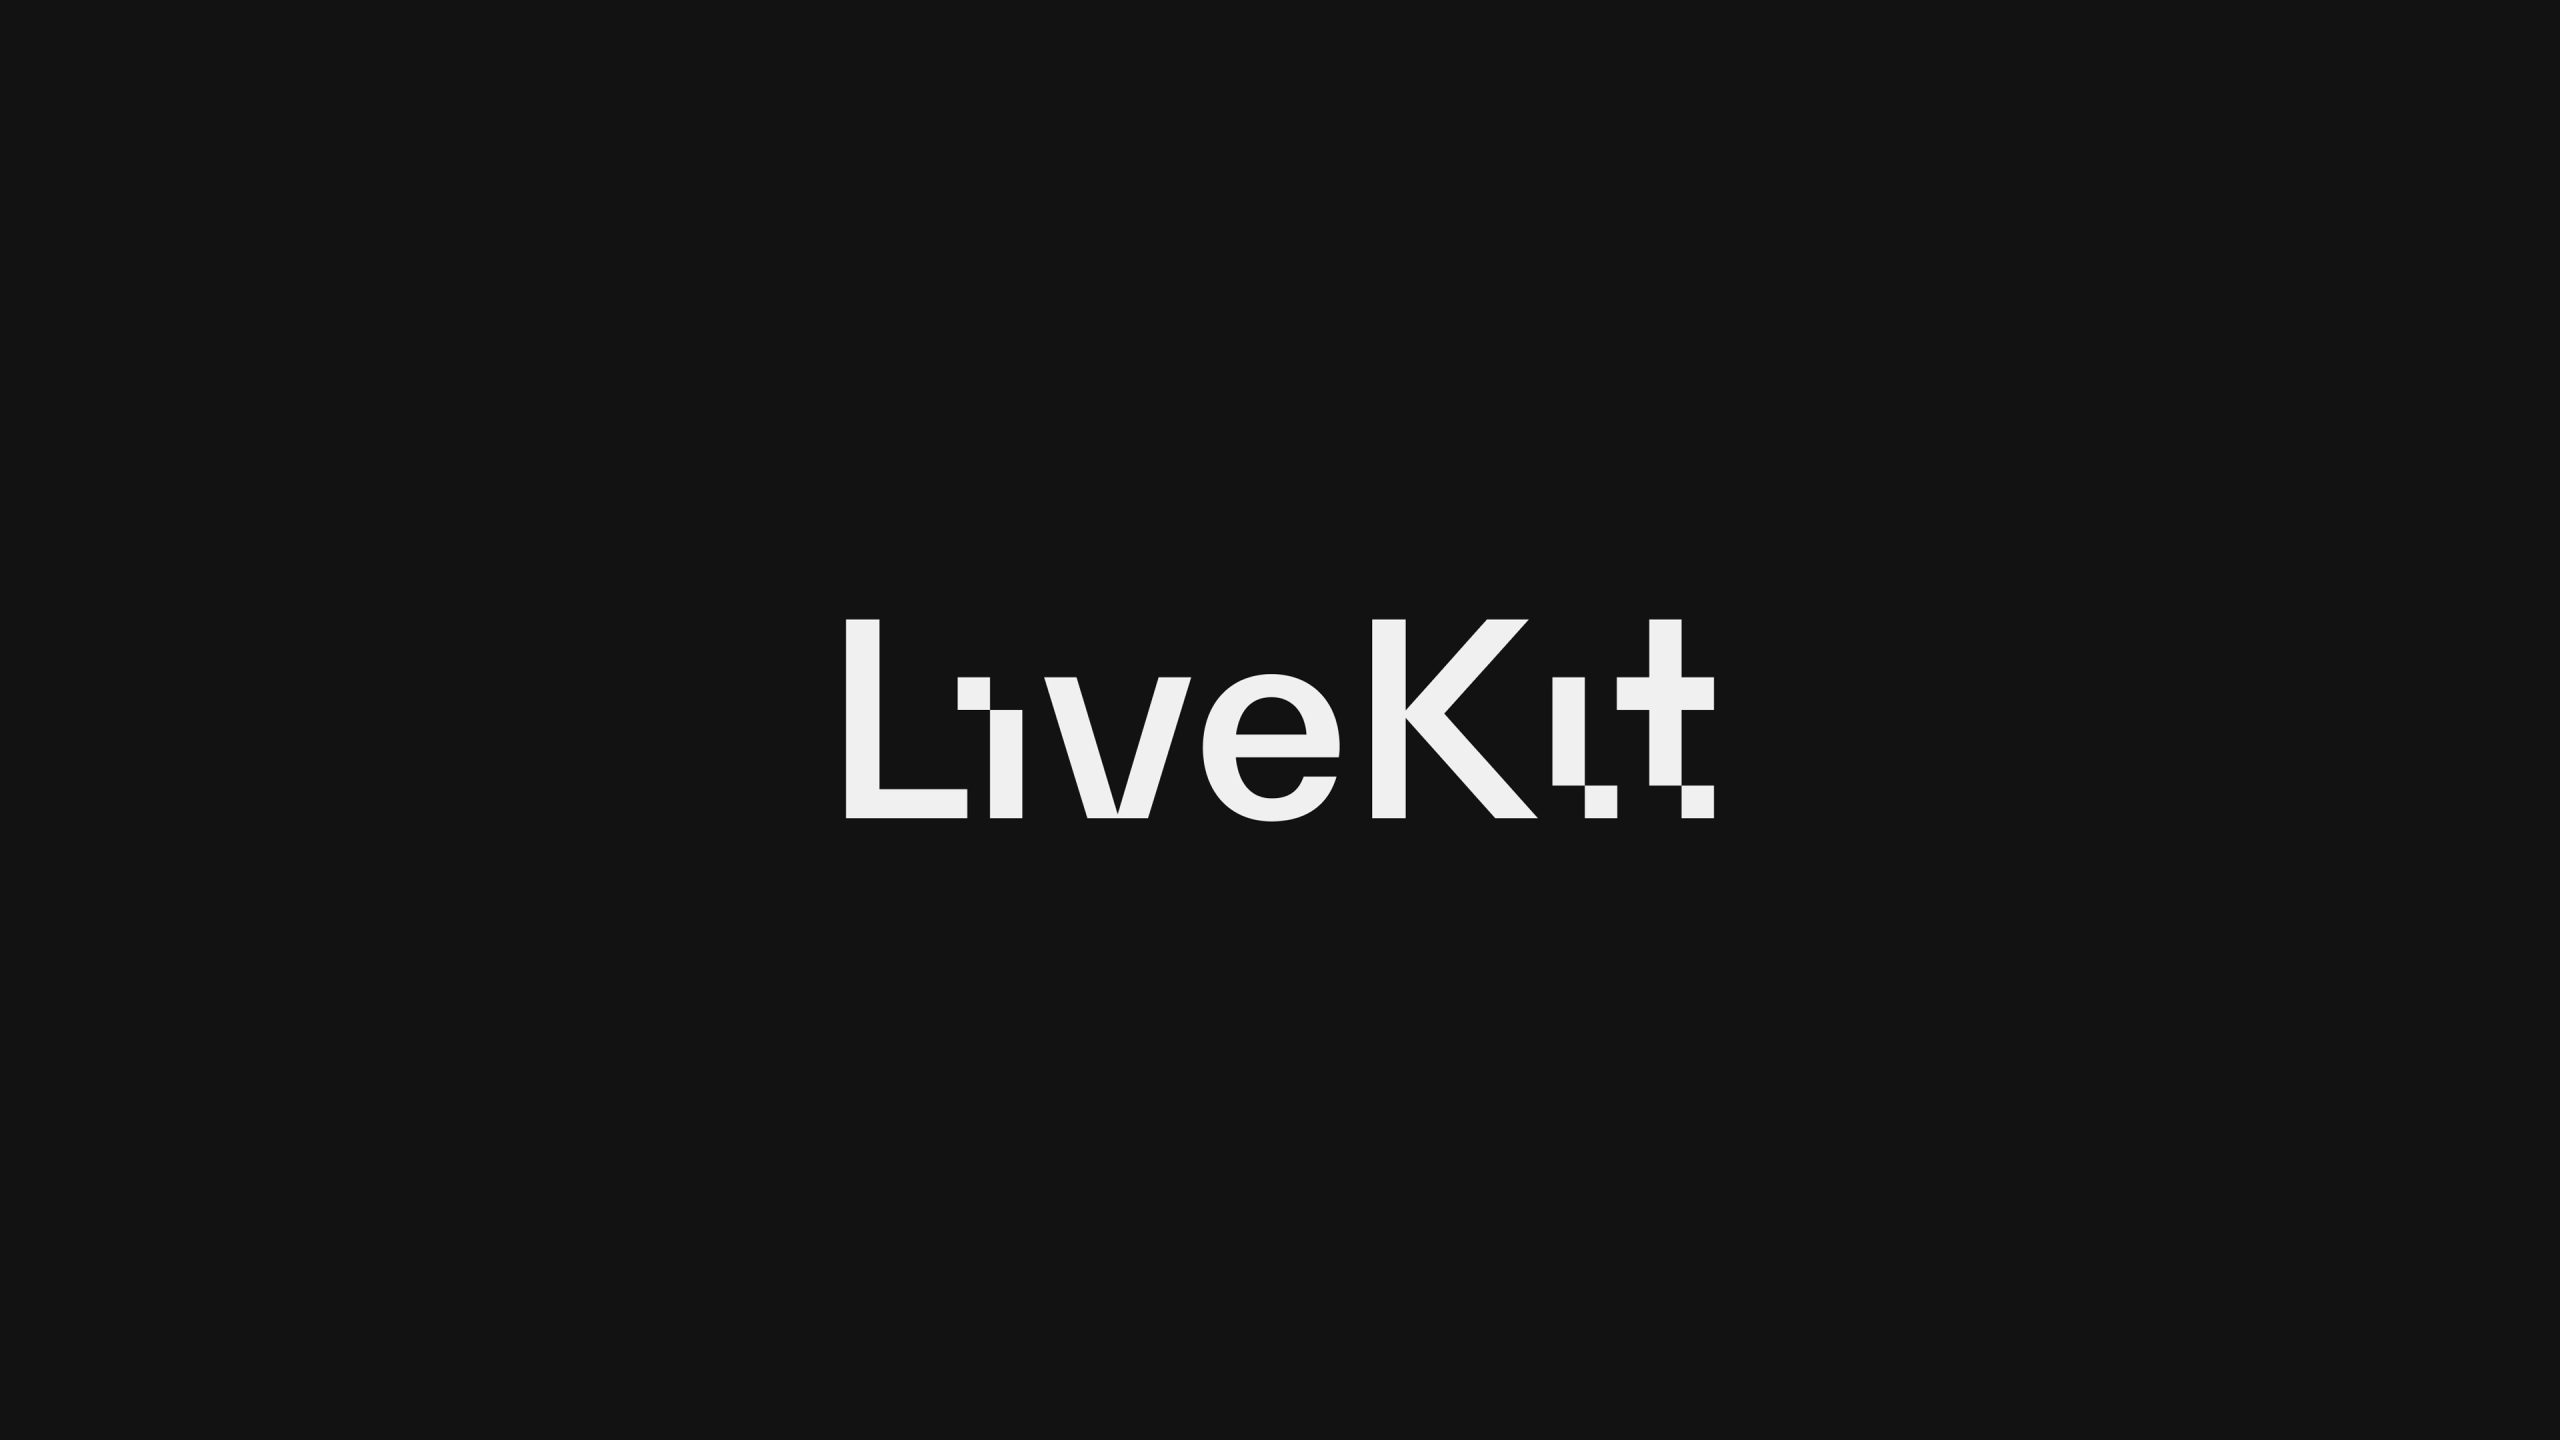 LiveKit wordmark